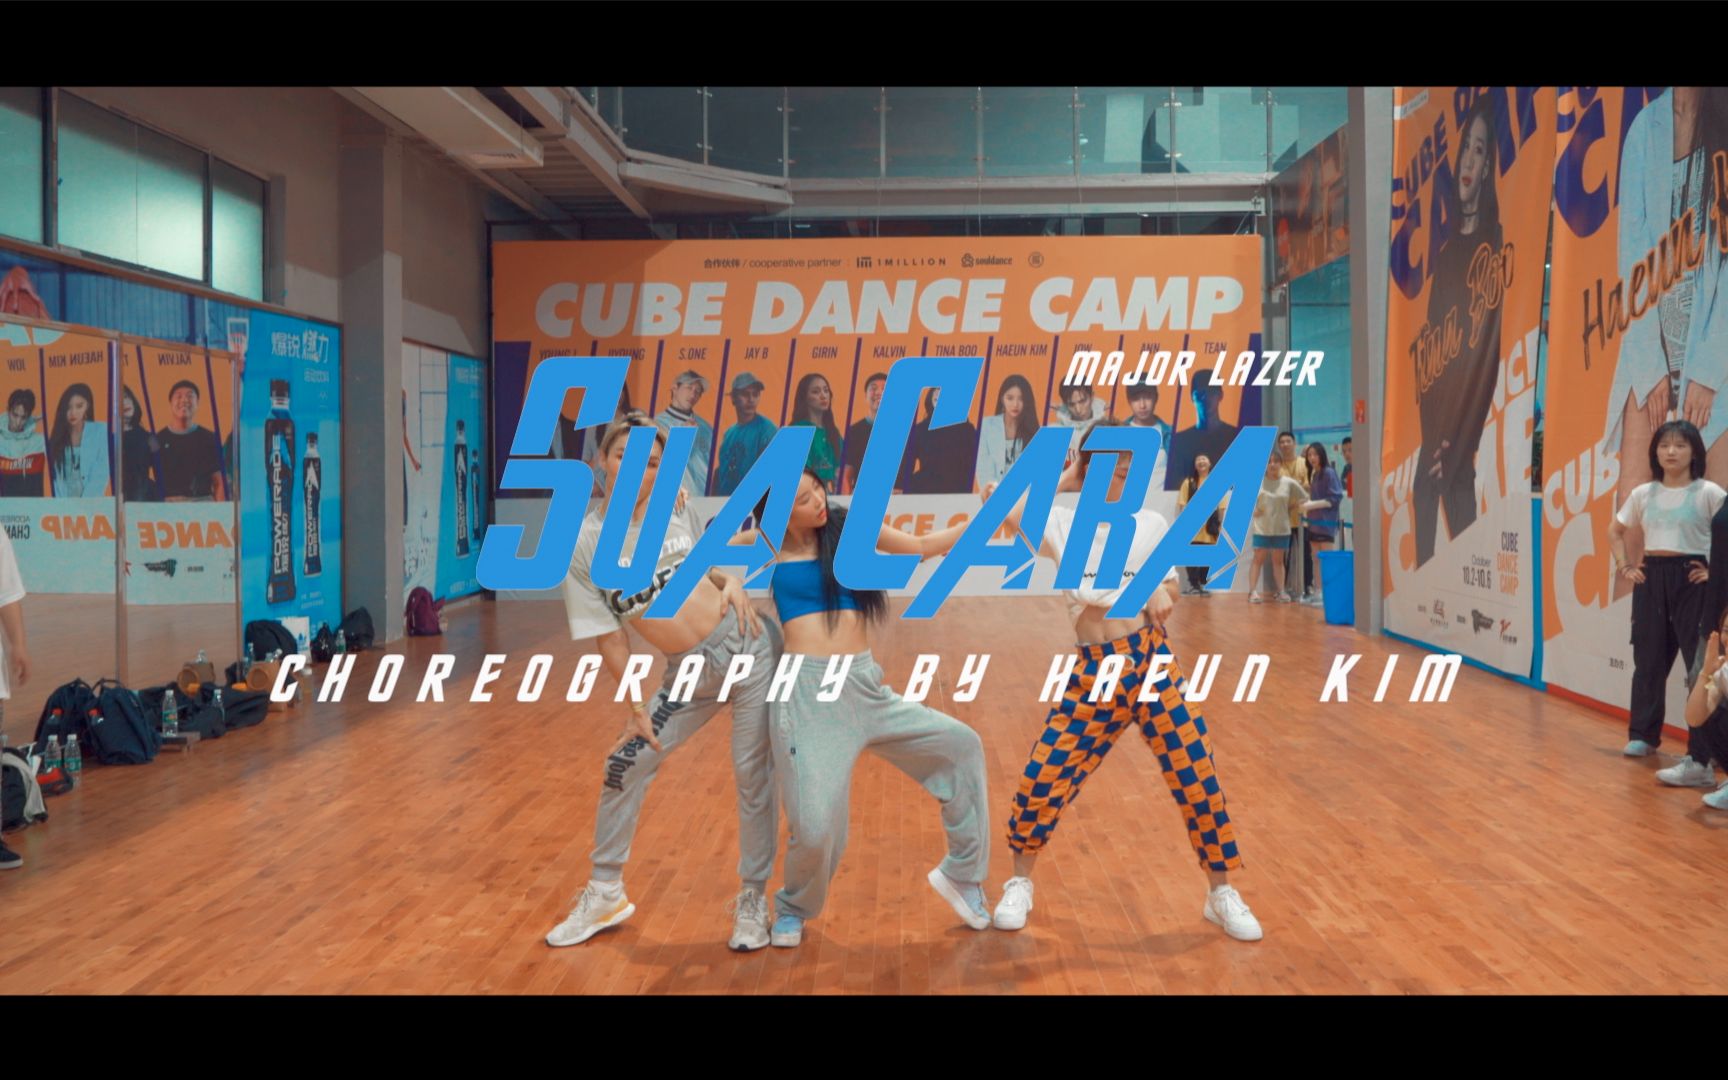 「2019 CUBE DANCE CAMP 2.0」Haeun Kim编舞作品《Sua Cara》